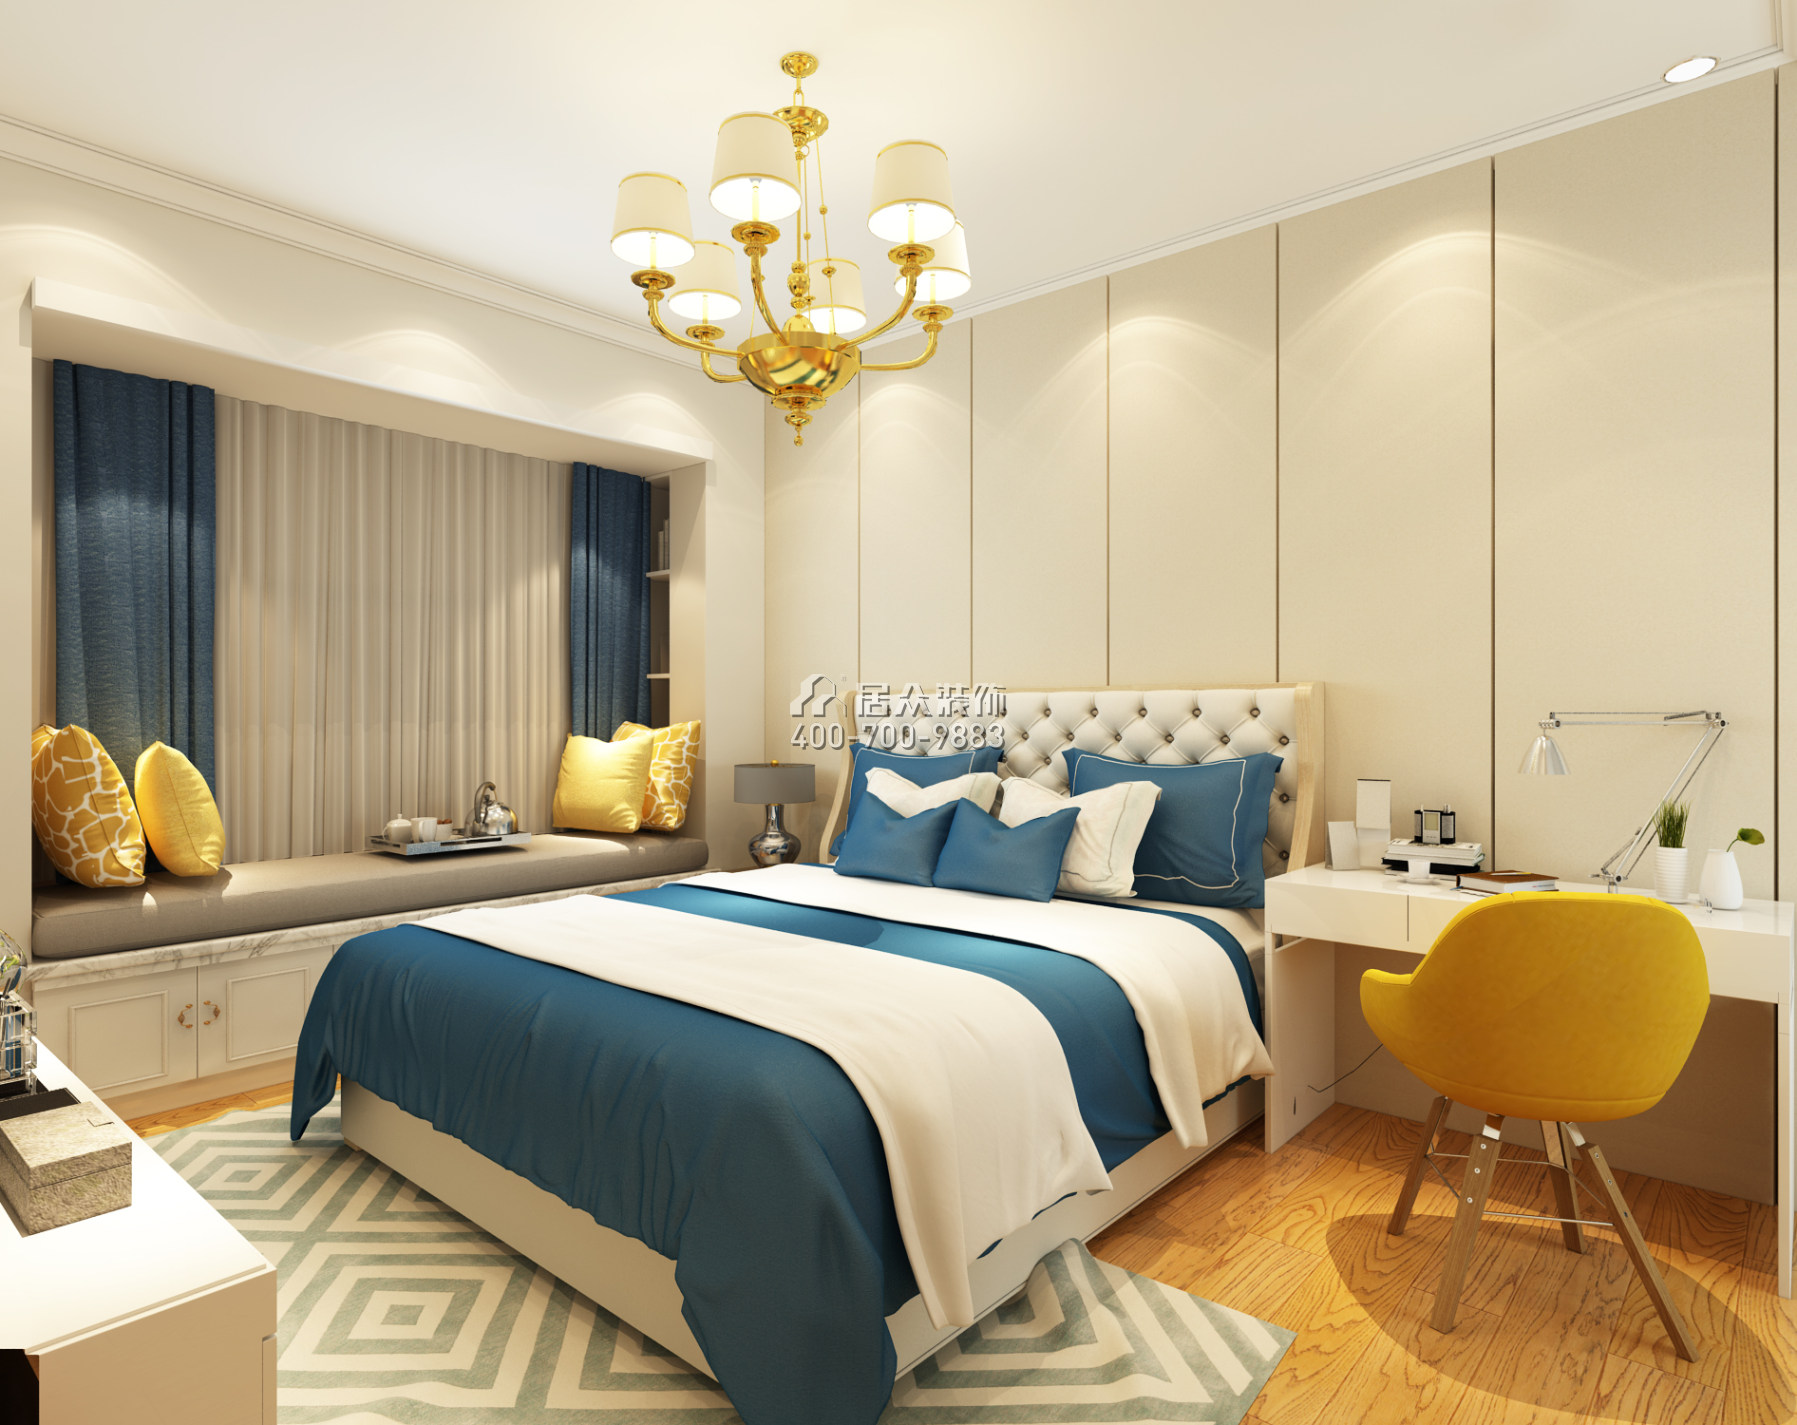 美的翰城130平方米欧式风格平层户型卧室装修效果图